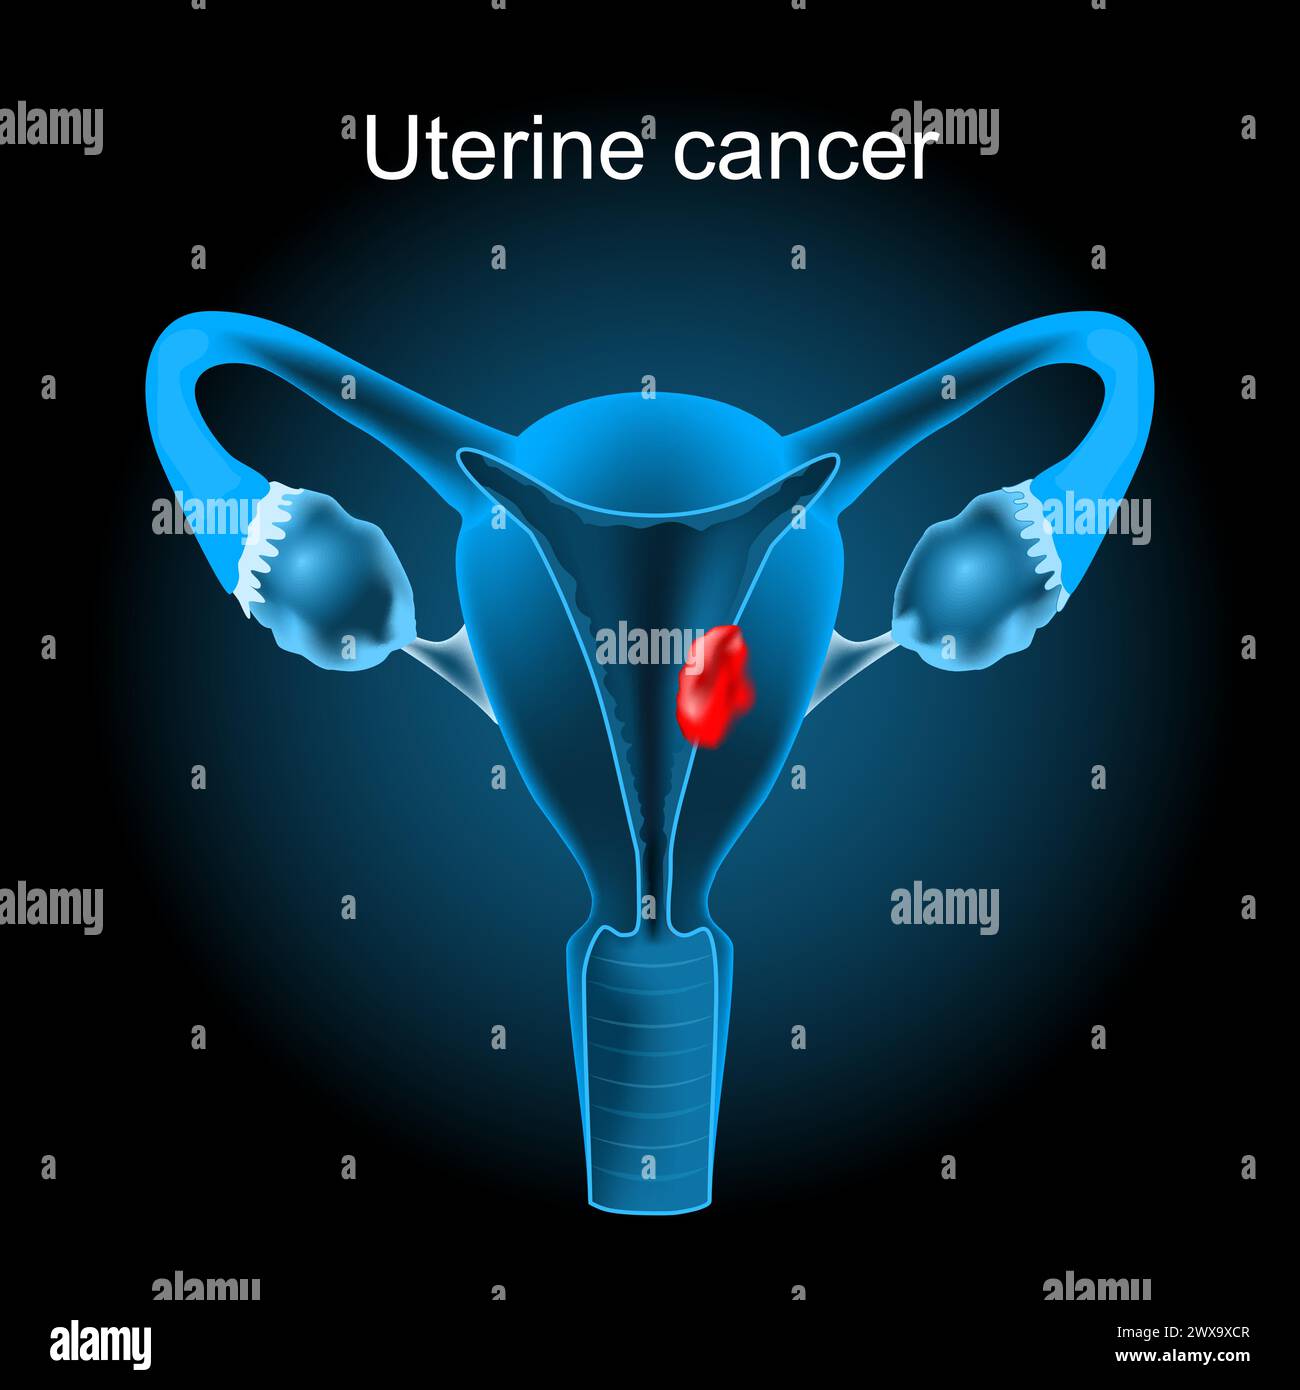 Cancer utérin. Section transversale d'un utérus humain avec tumeur endométriale. appareil reproducteur féminin. Illustration vectorielle comme une image radiographique. Reproduction Illustration de Vecteur